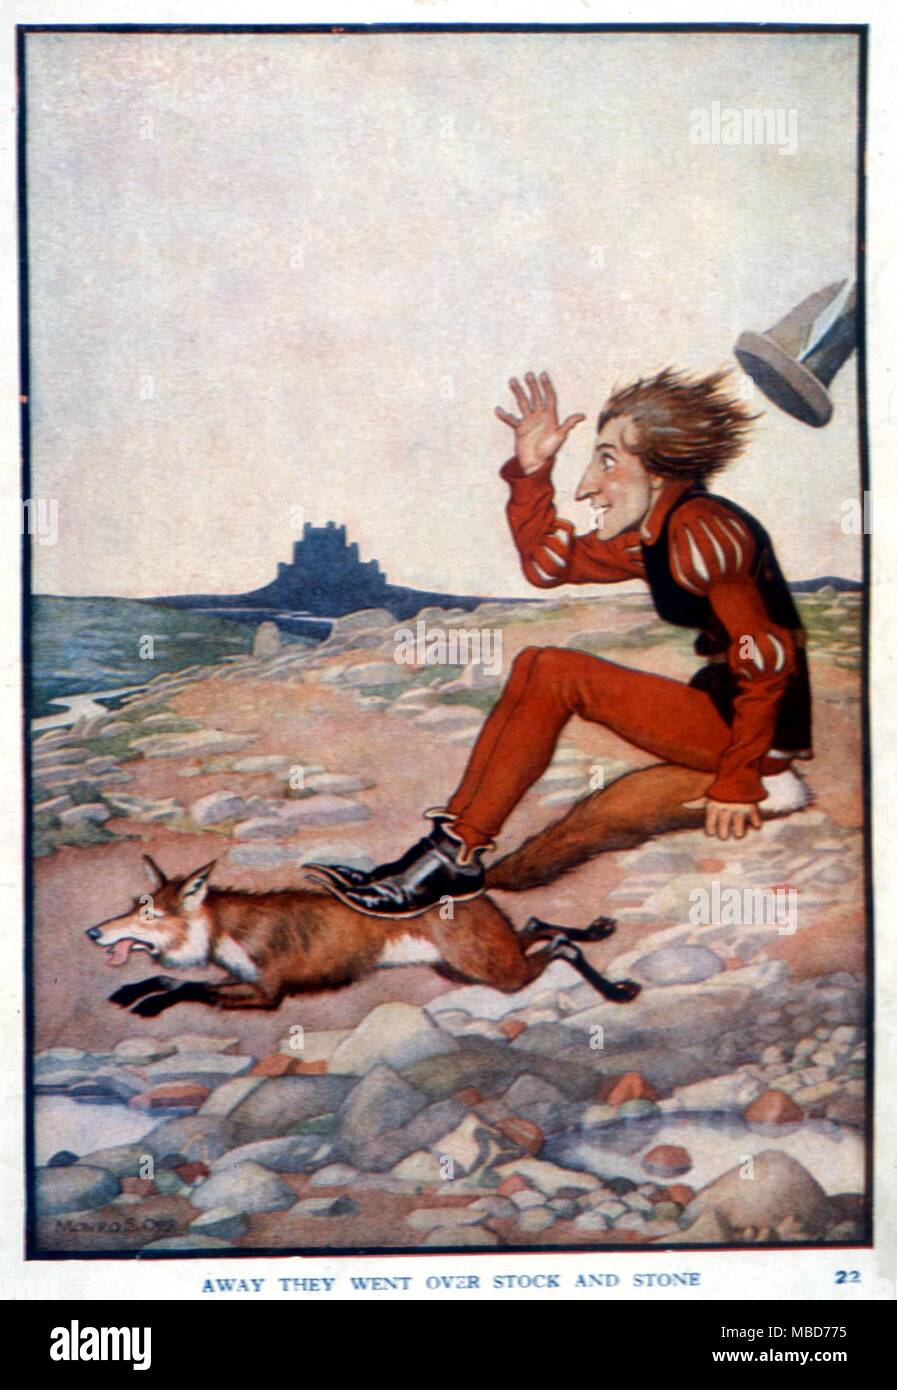 Le fiabe - Grimm - Illustrazione di Monro S. Orr per Grimm's Fairy Tales - nd ma c. 1920 - lontano sono andati oltre le scorte e di pietra - da l'uccello dorato Foto Stock